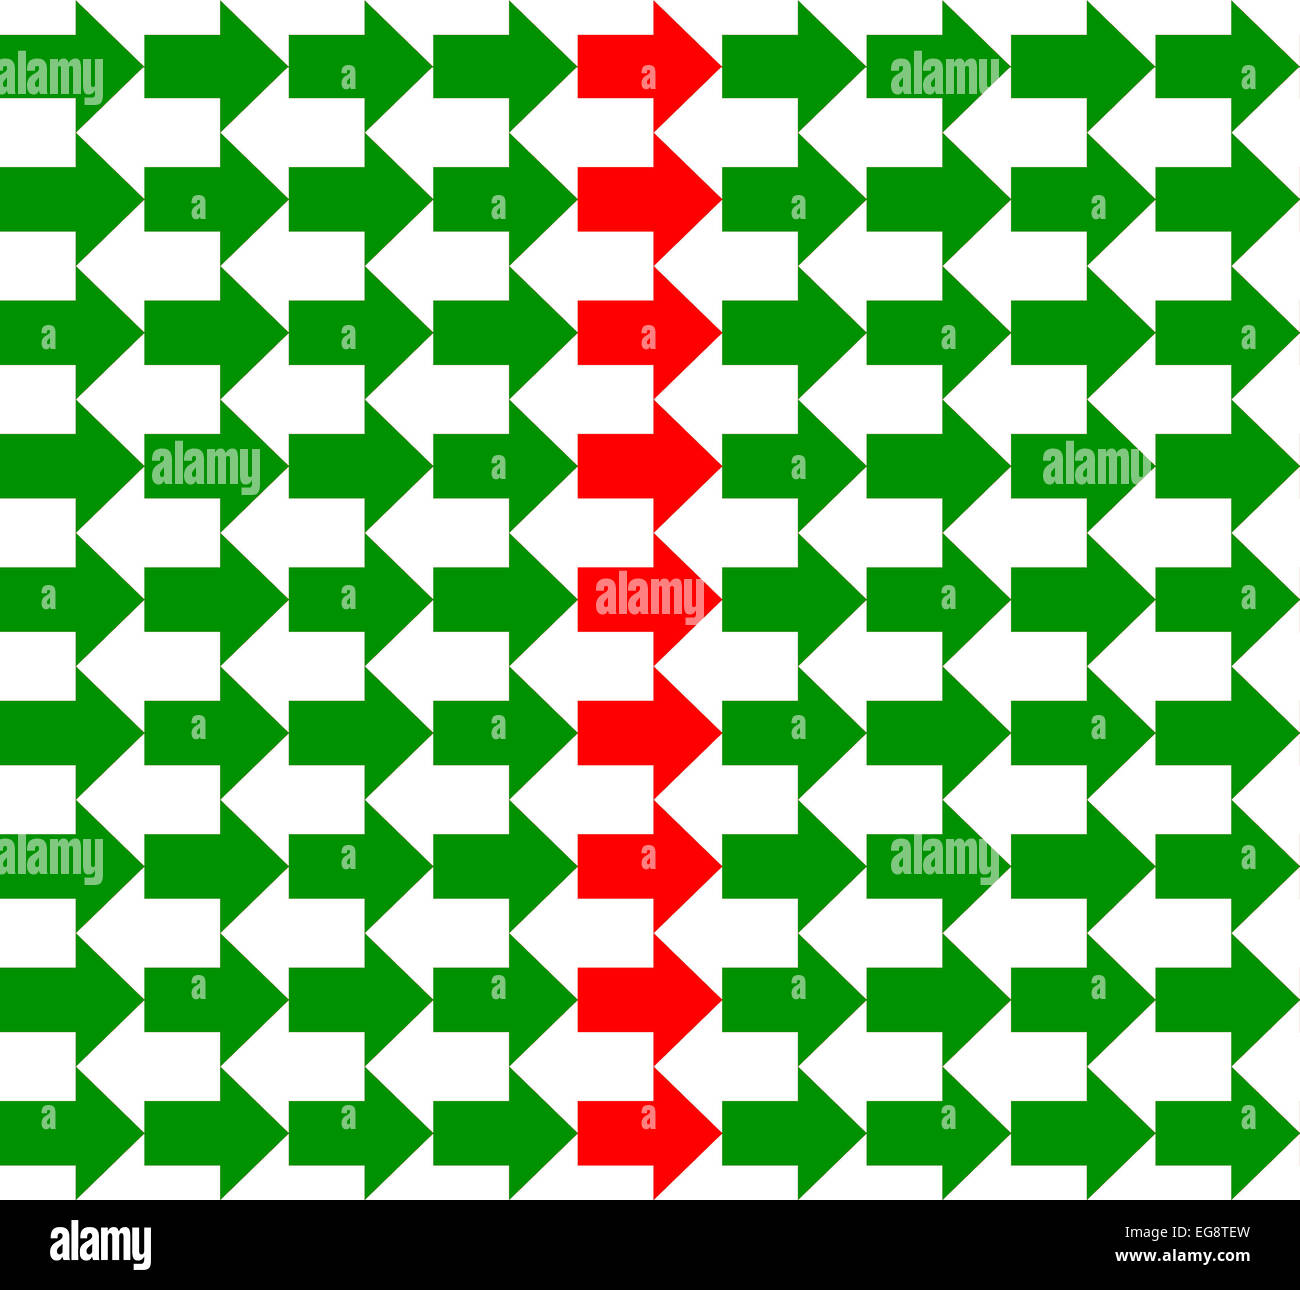 Grüne und weiße Pfeile in entgegengesetzte Richtungen, mit einer roten Reihe in der Mitte, nahtloses Muster Stockfoto